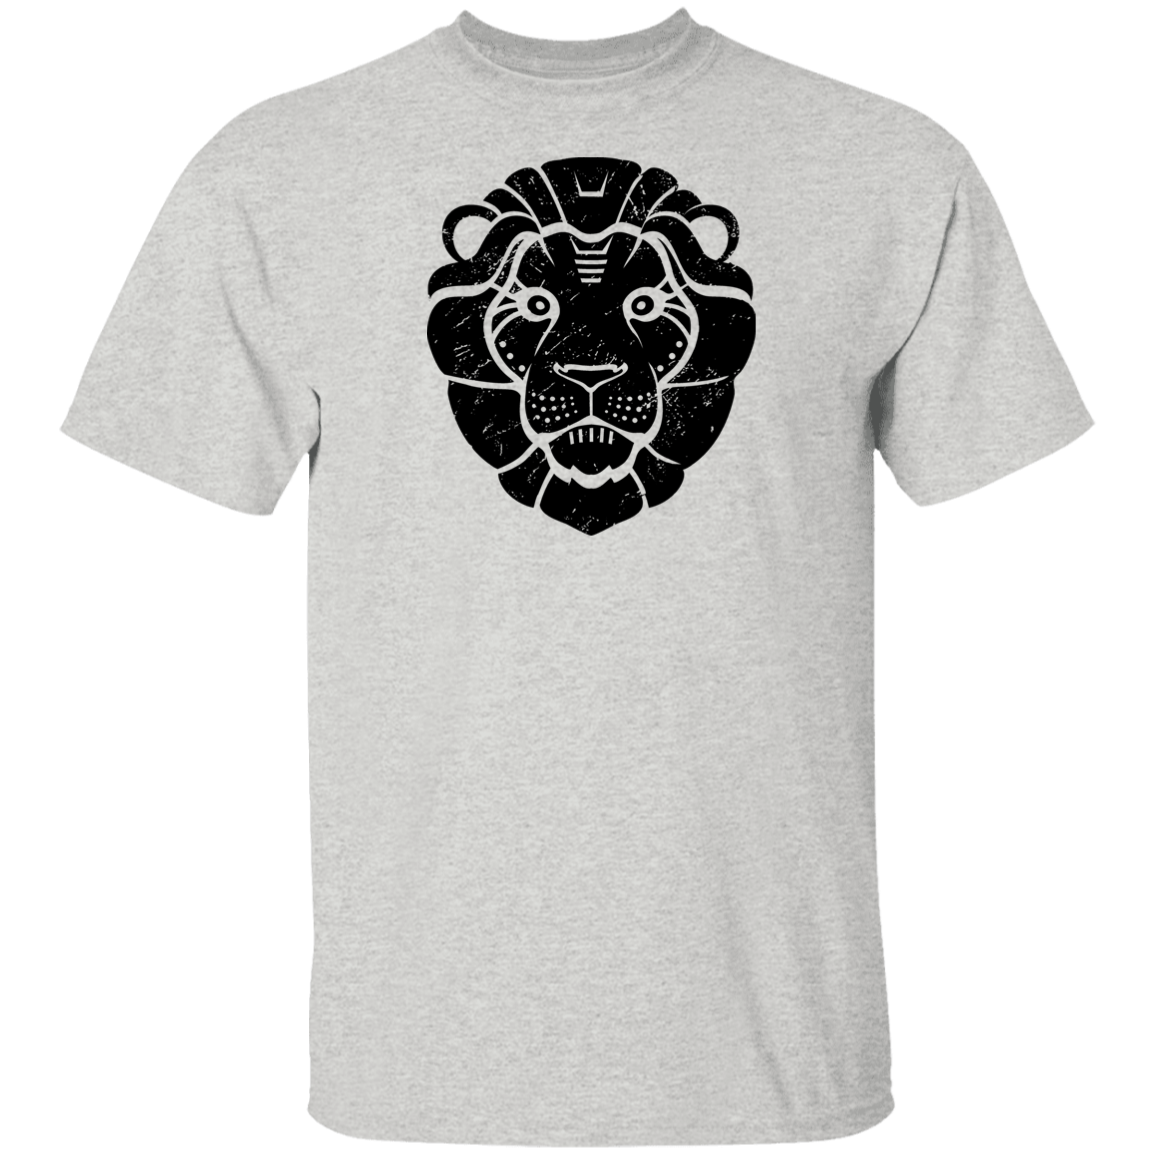 Black Distressed Emblem T-Shirt for Kids (Lion/Leo)